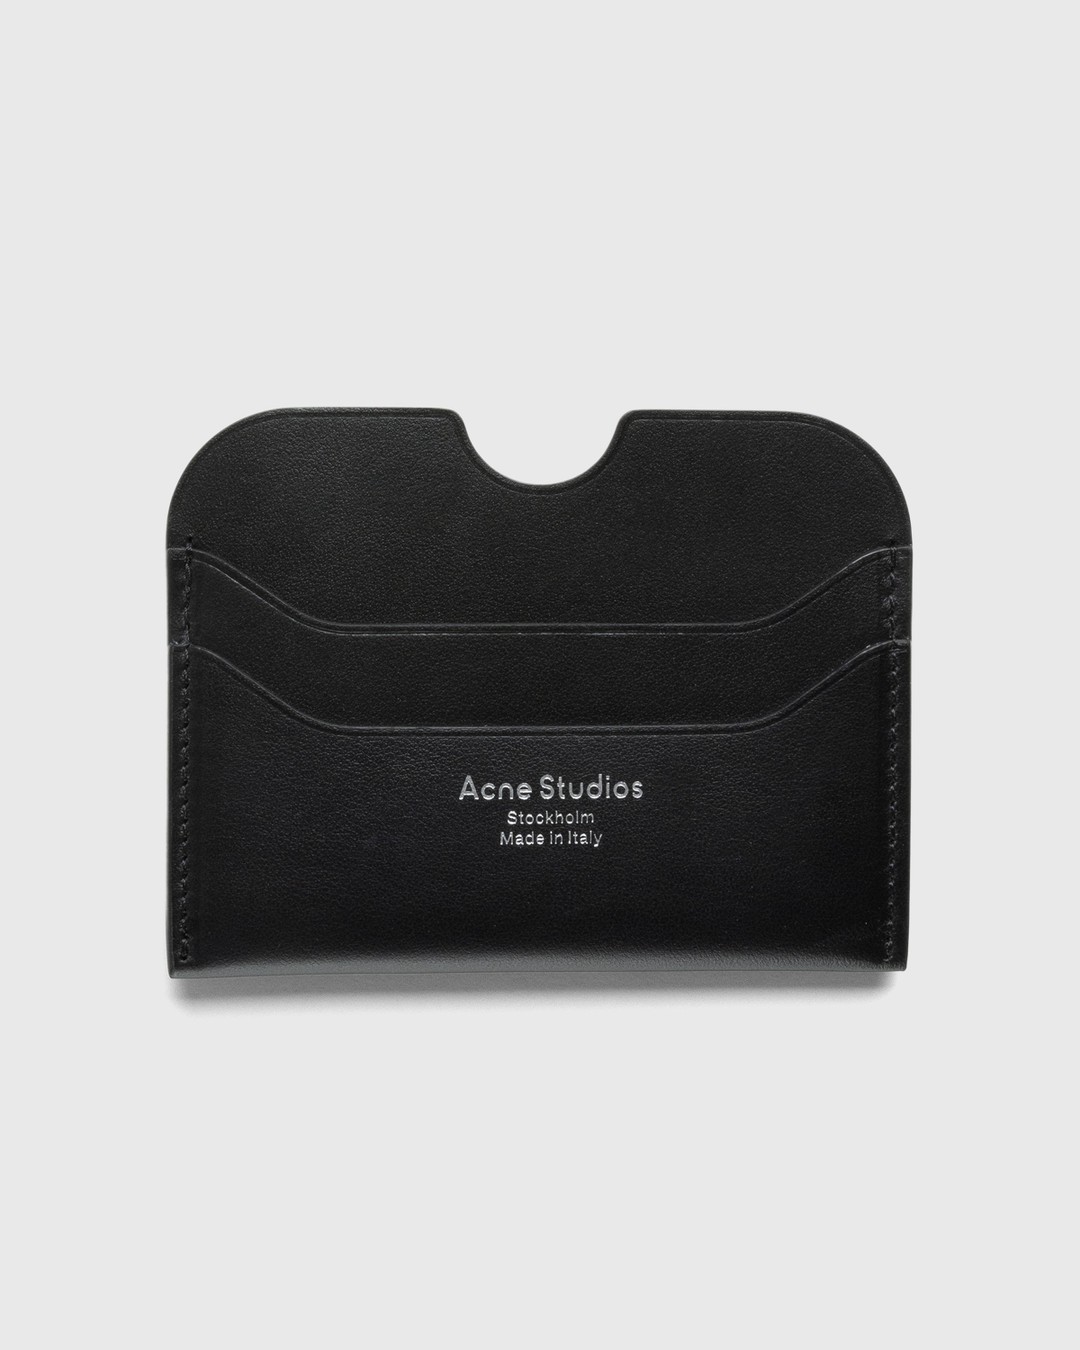 Acne Studios – Leather Card Holder Black - Wallets - Black - Image 1